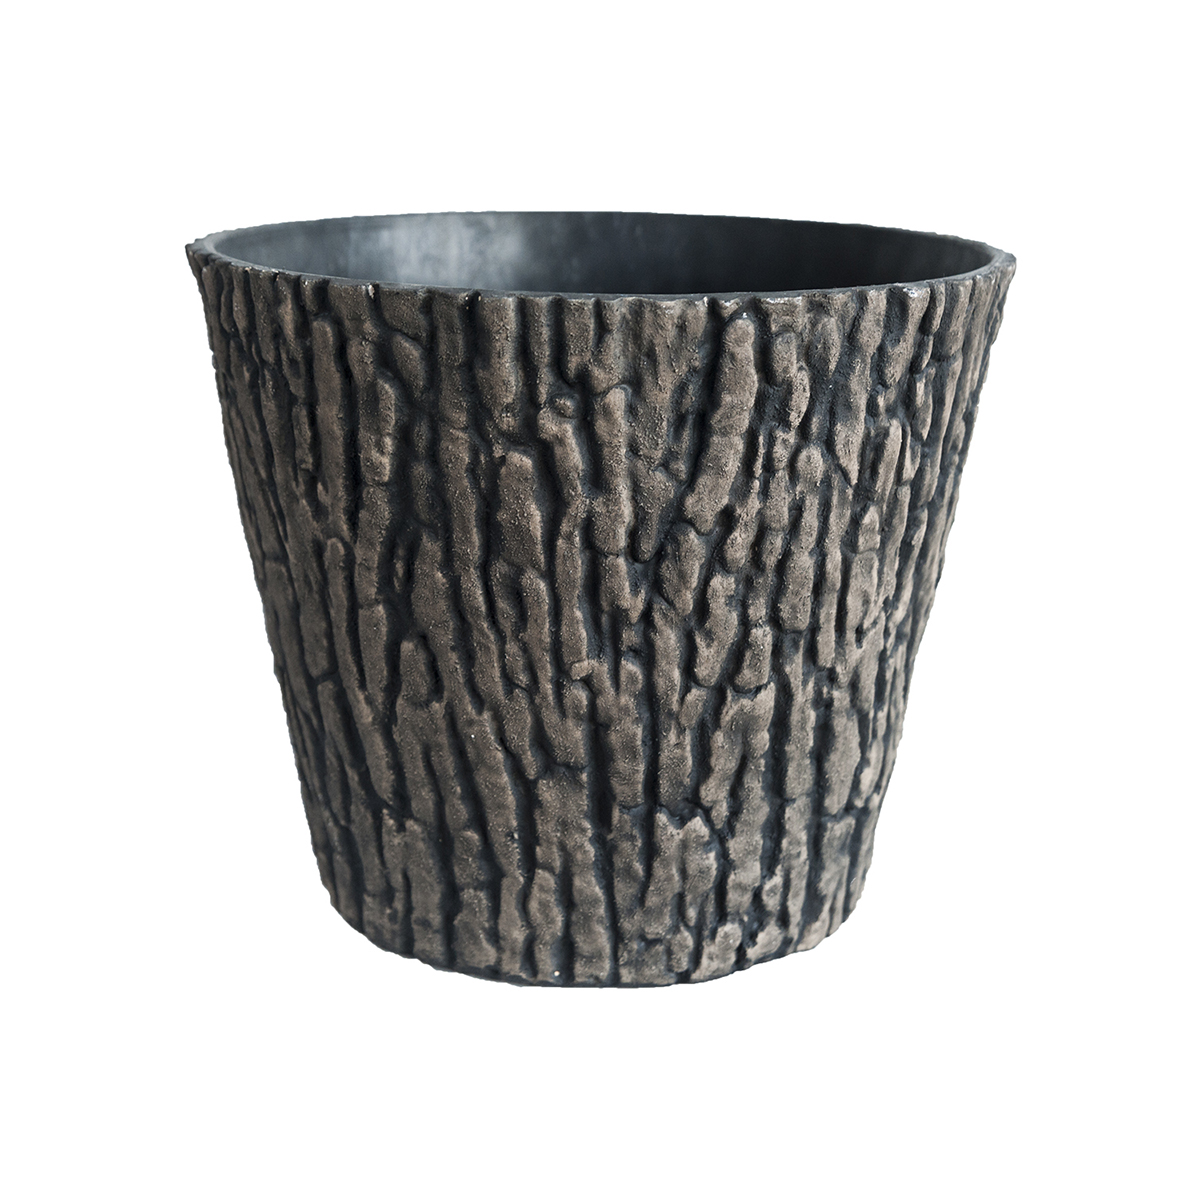 Pp Plastic Faux Wood Bark Plant Pot